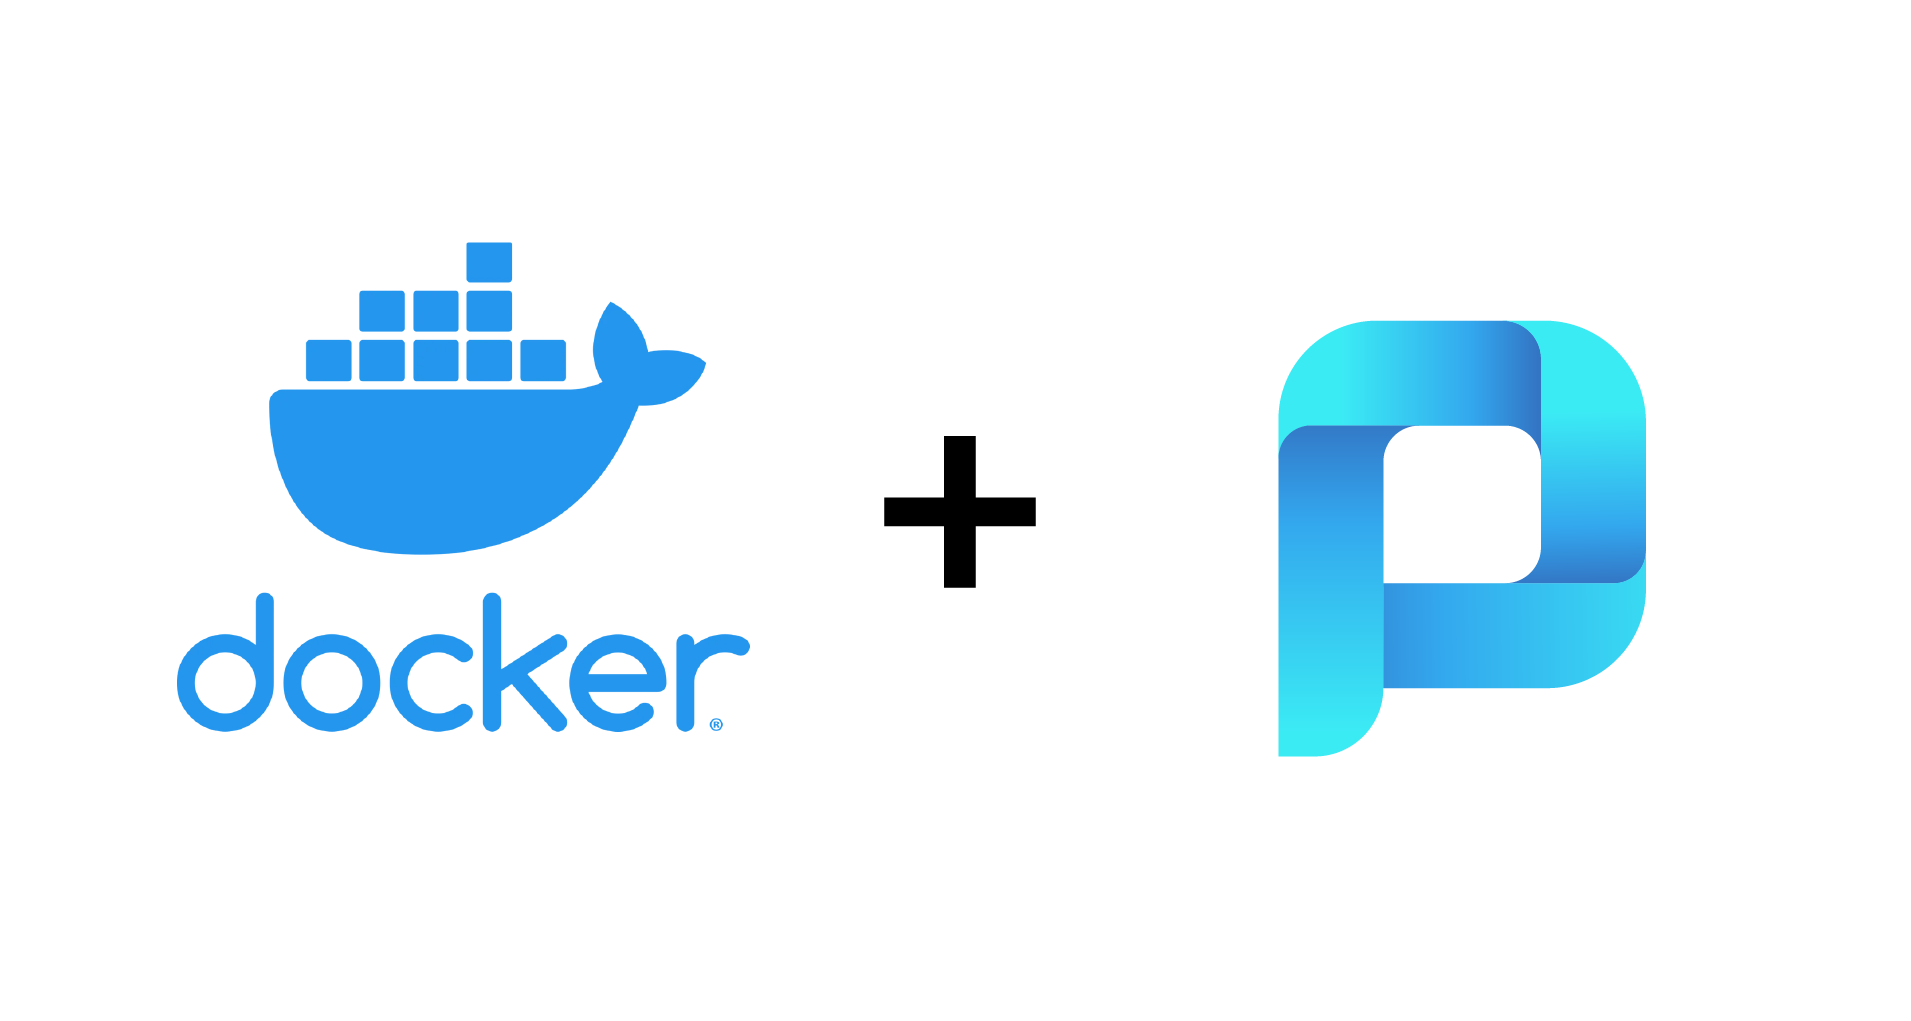 ProcessMaker Docker Version